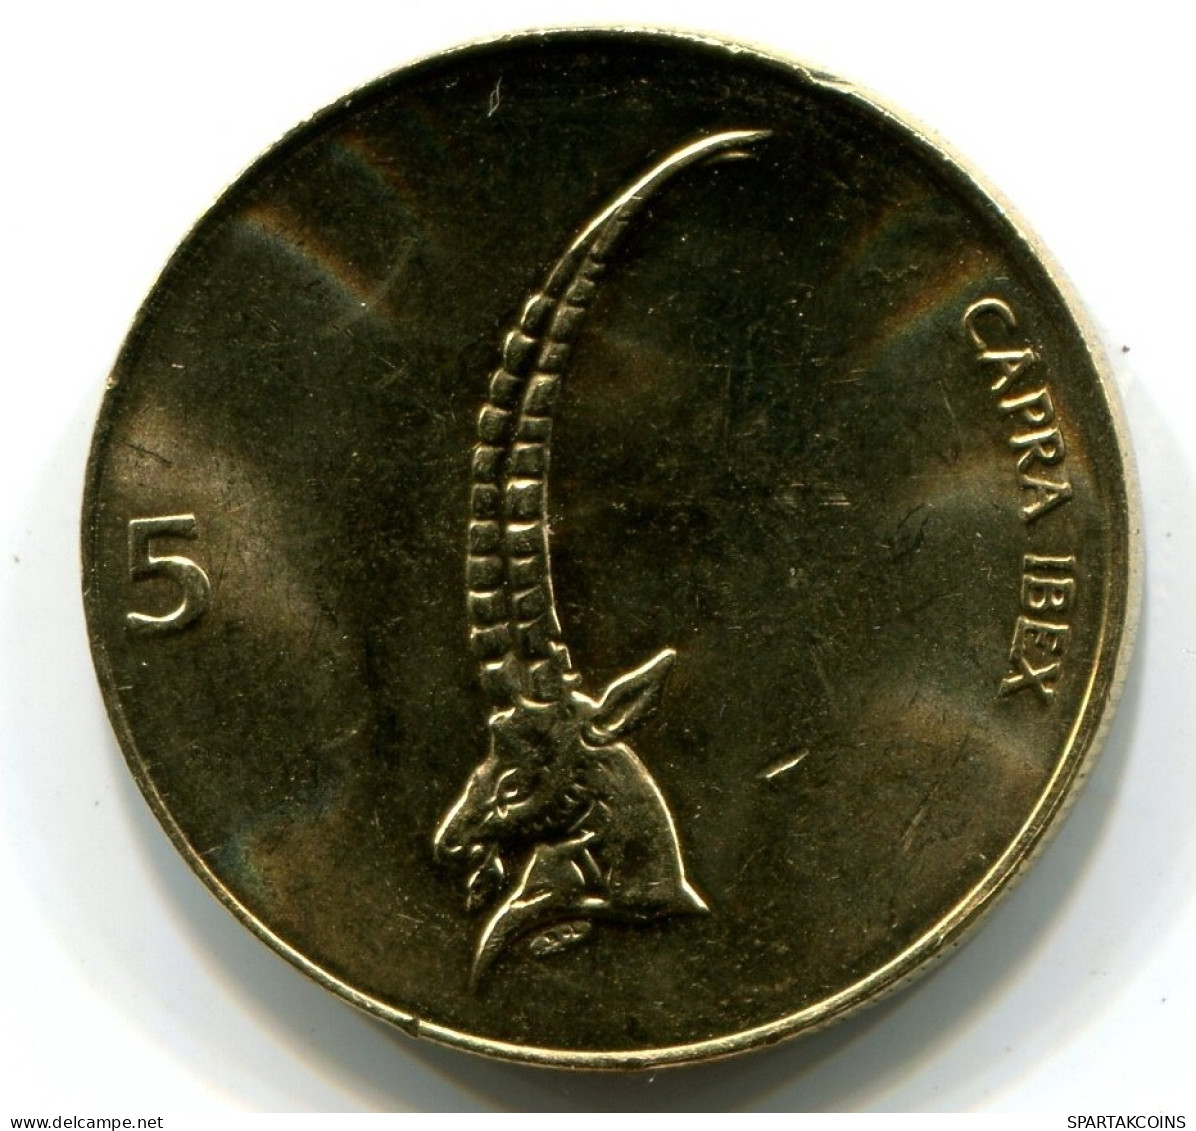 5 TOLAR 2000 SLOVENIA UNC Coin HEAD CAPRICORN #W11093.U.A - Slovenia